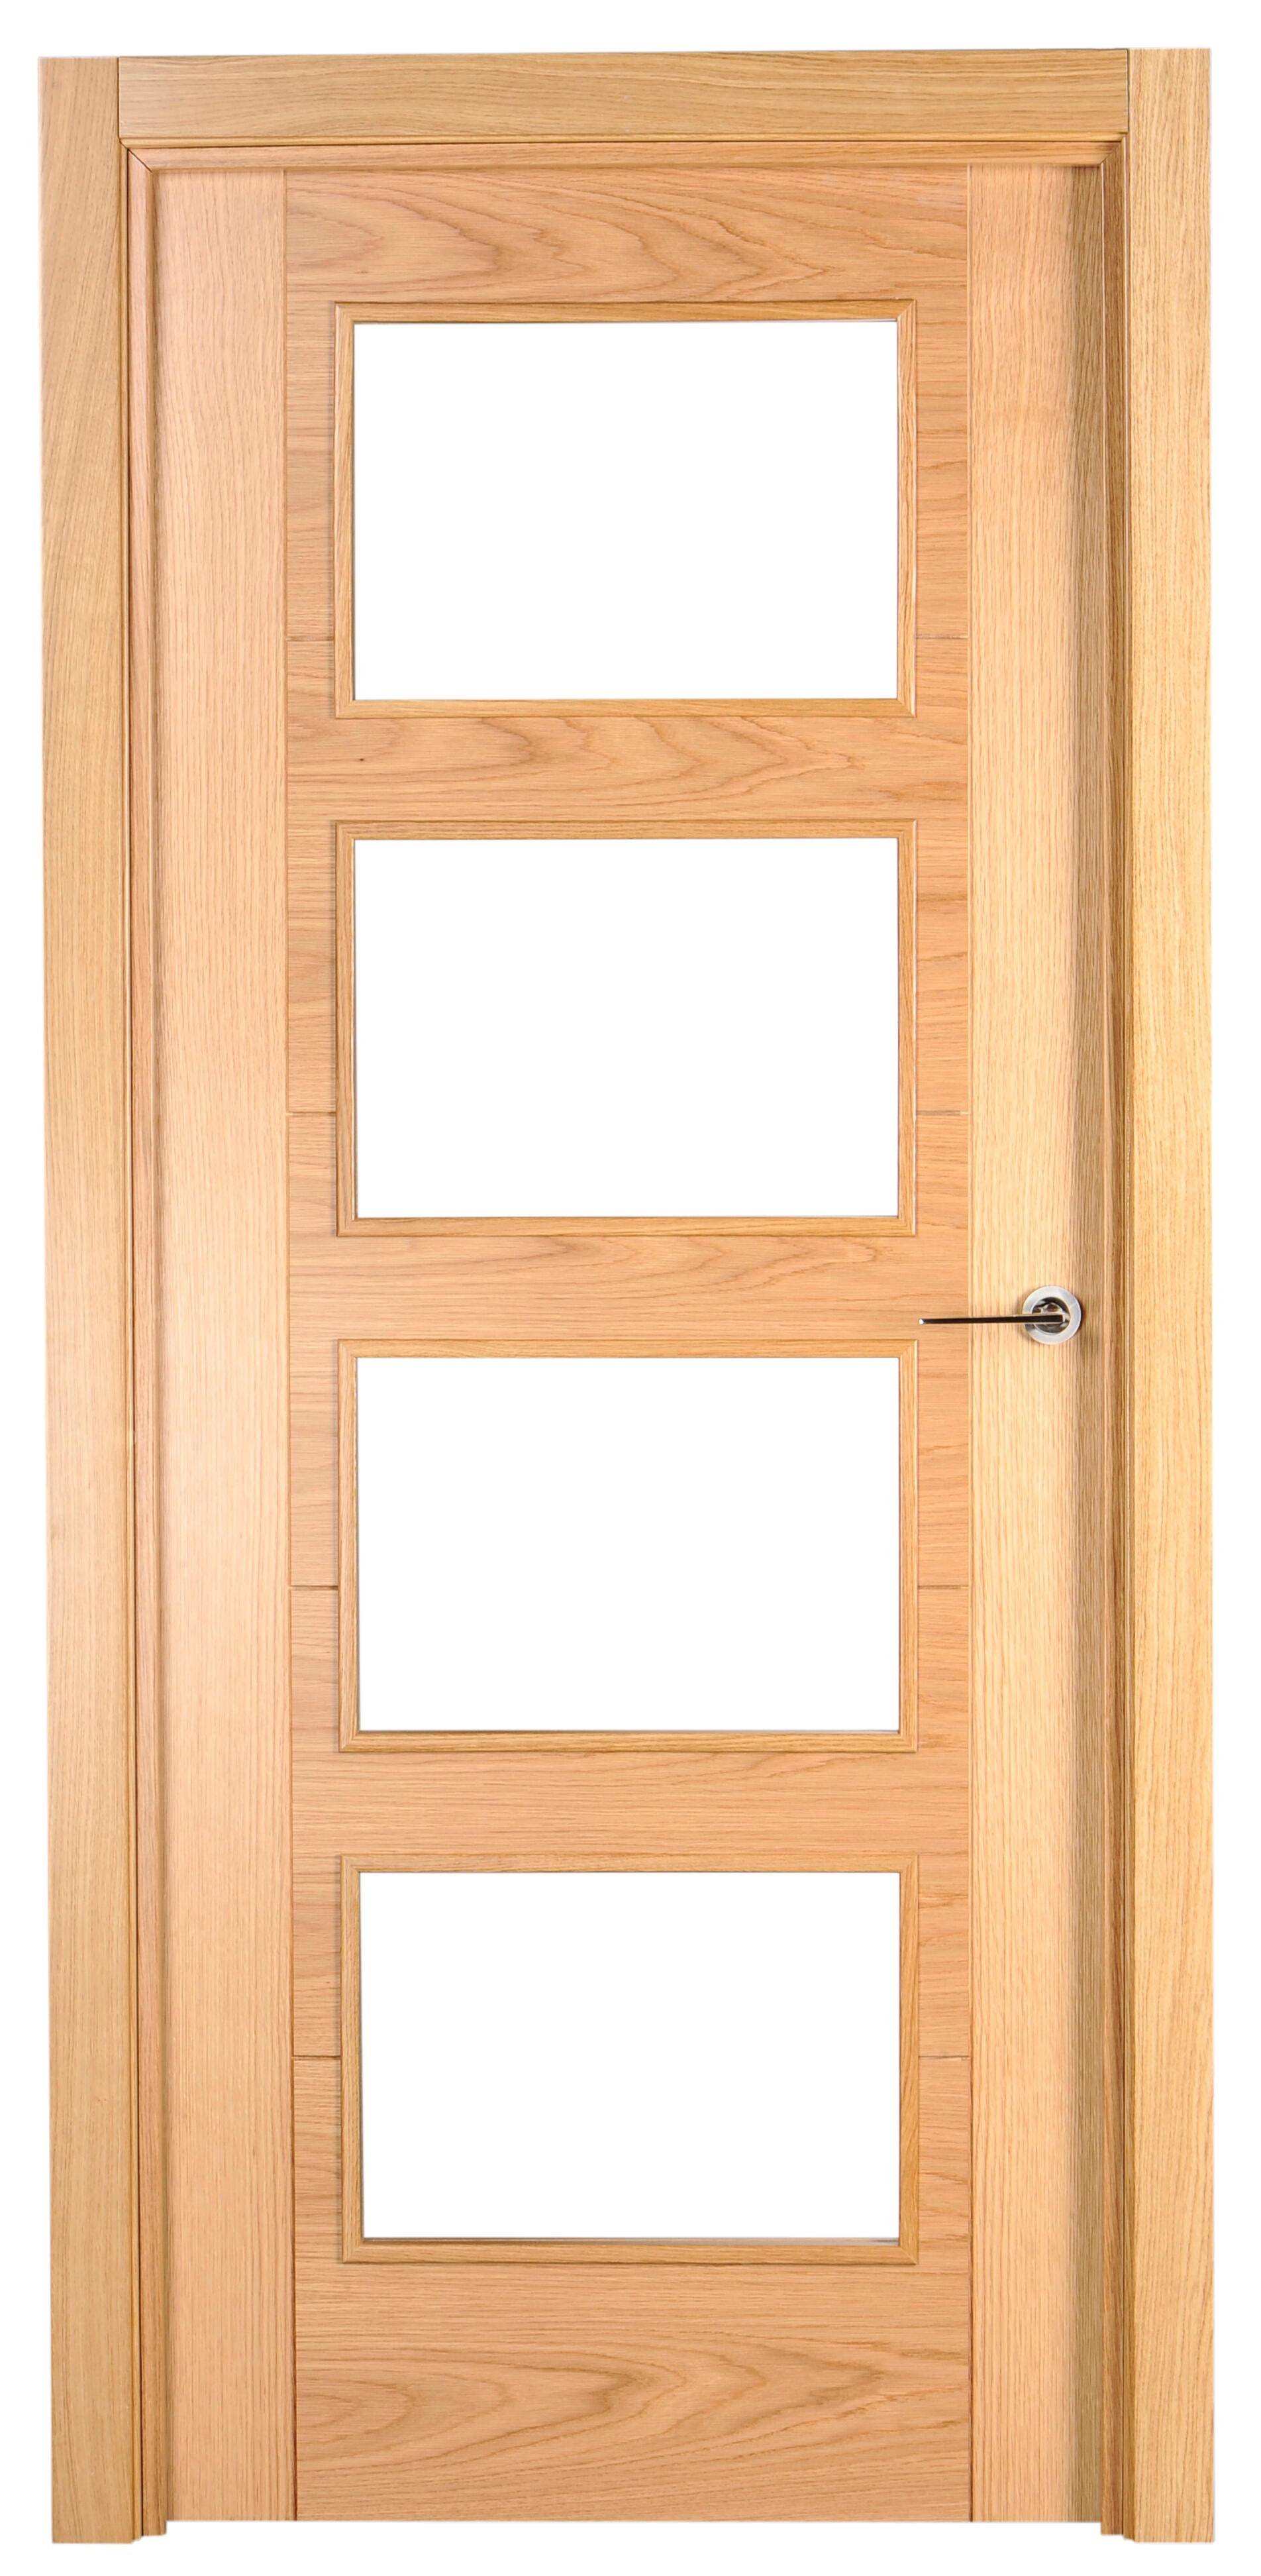 Puerta noruega roble apertura izquierda con cristal 9x72.5cm